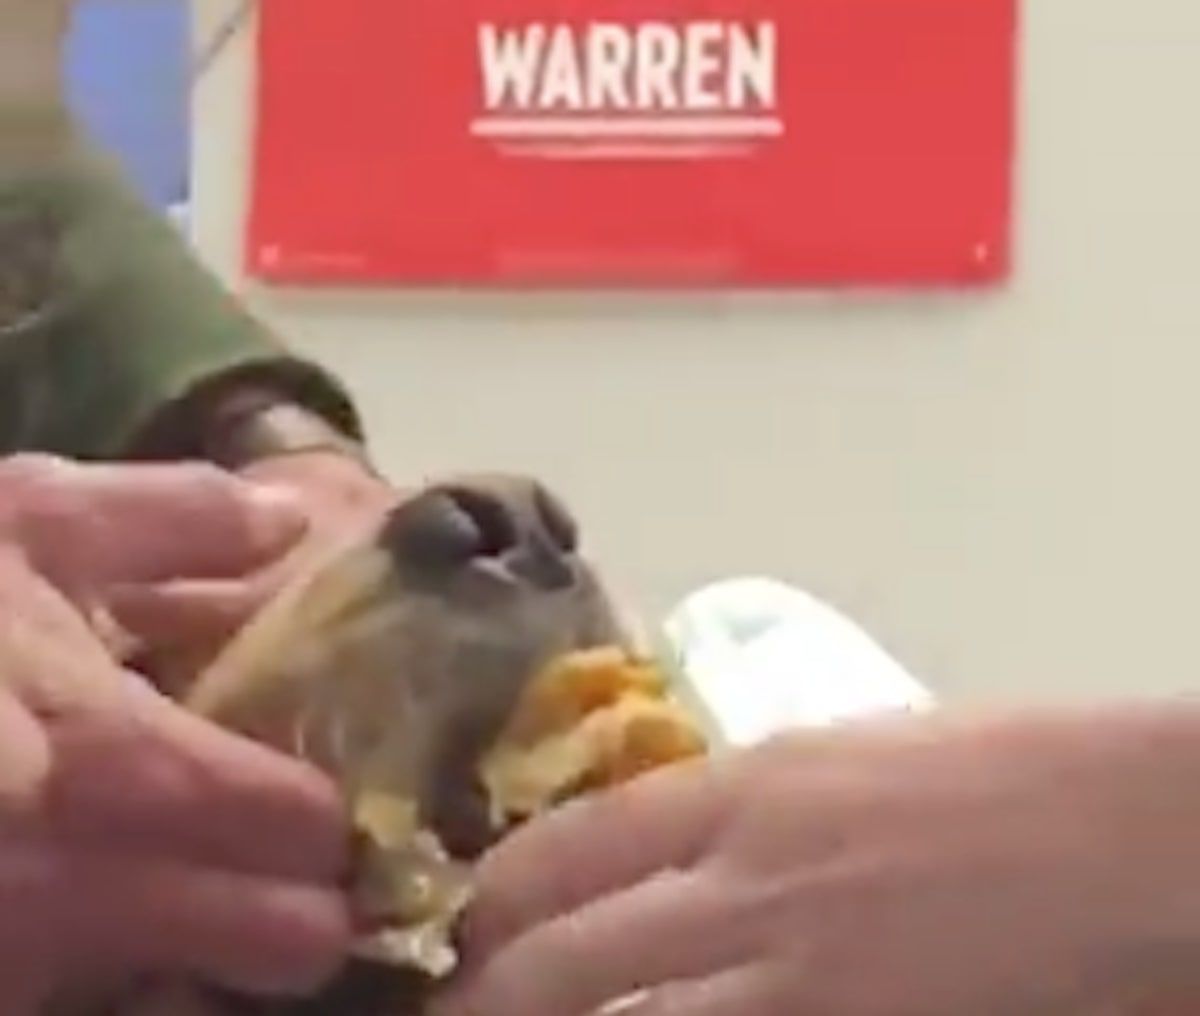 Elizabeth Warrenin koira pyyhkäisee Burritoa hilpeässä virusvideossa